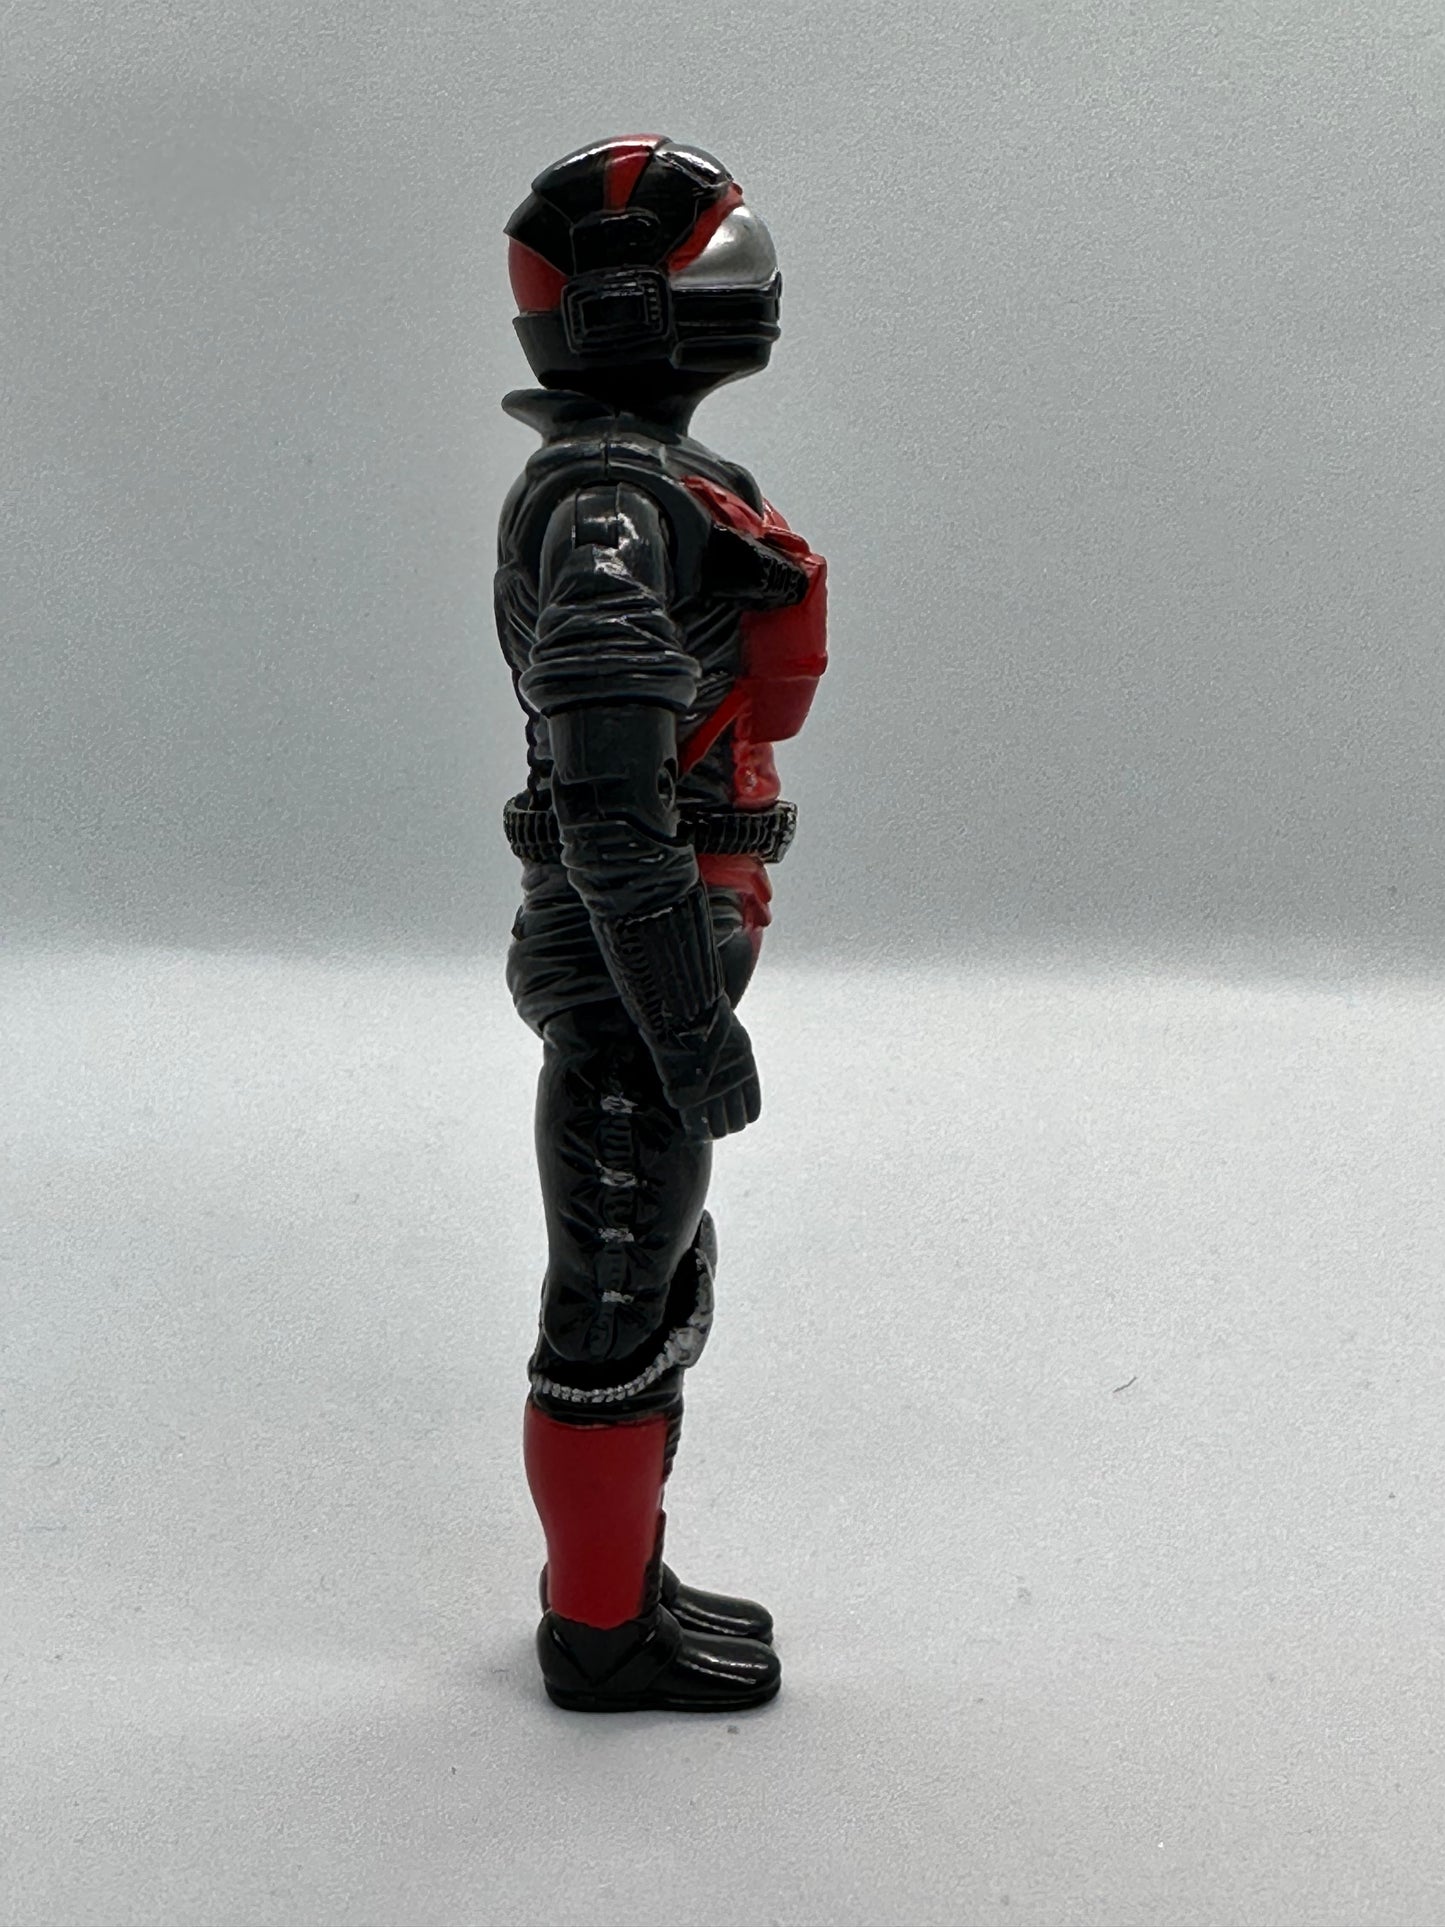 Strato-Viper G.I.Joe Toy Figure